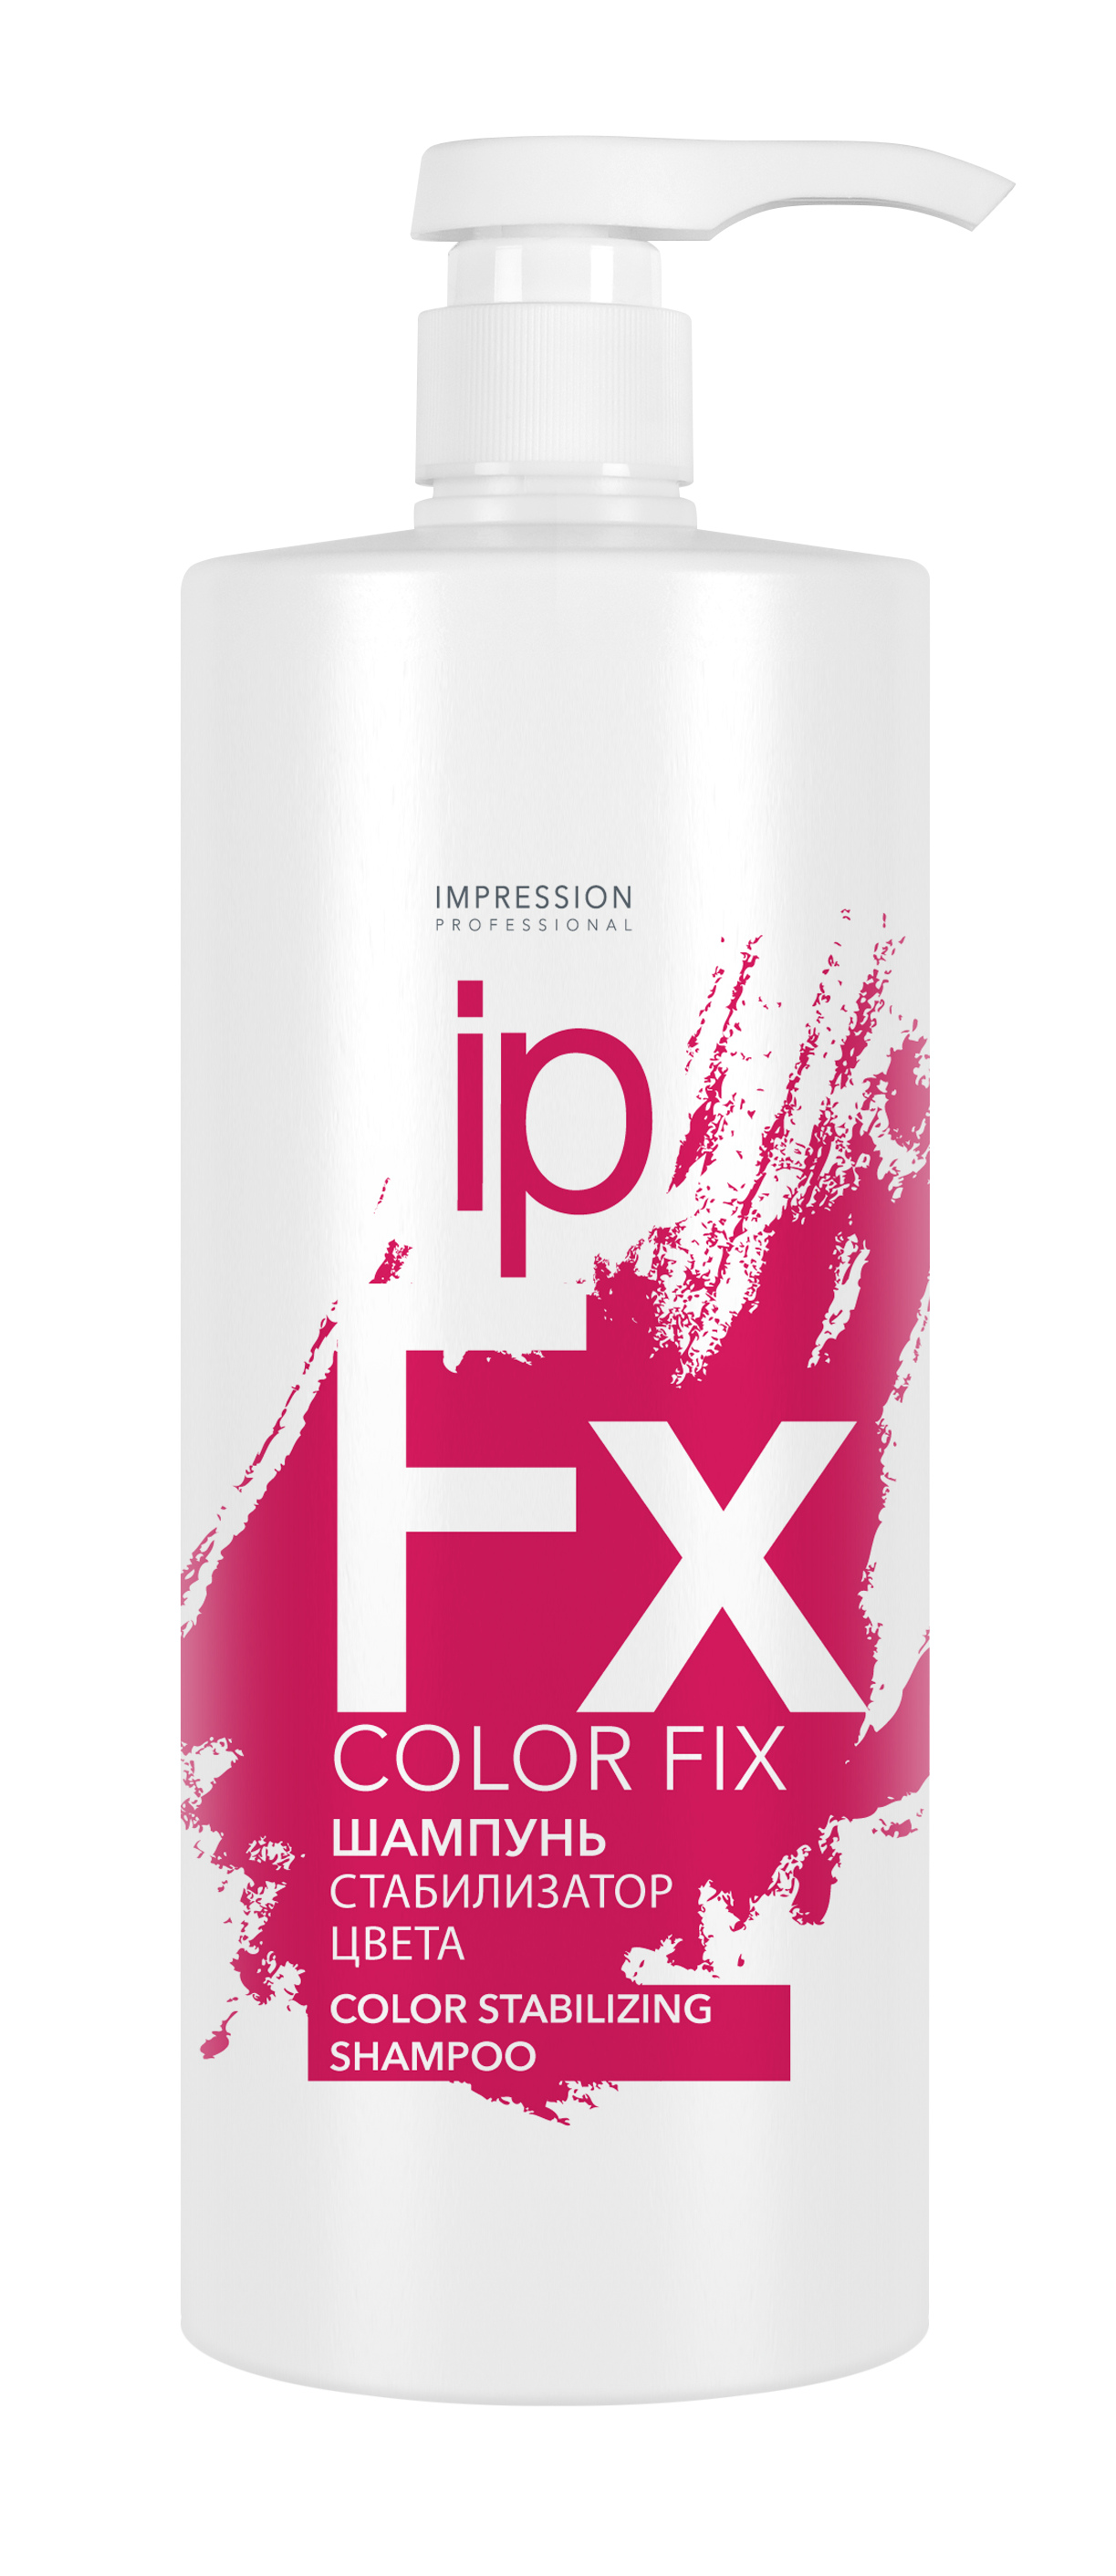 Шампунь для волос Impression Professional Color Fix стабилизатор цвета 1000мл - в интернет-магазине tut-beauty.by